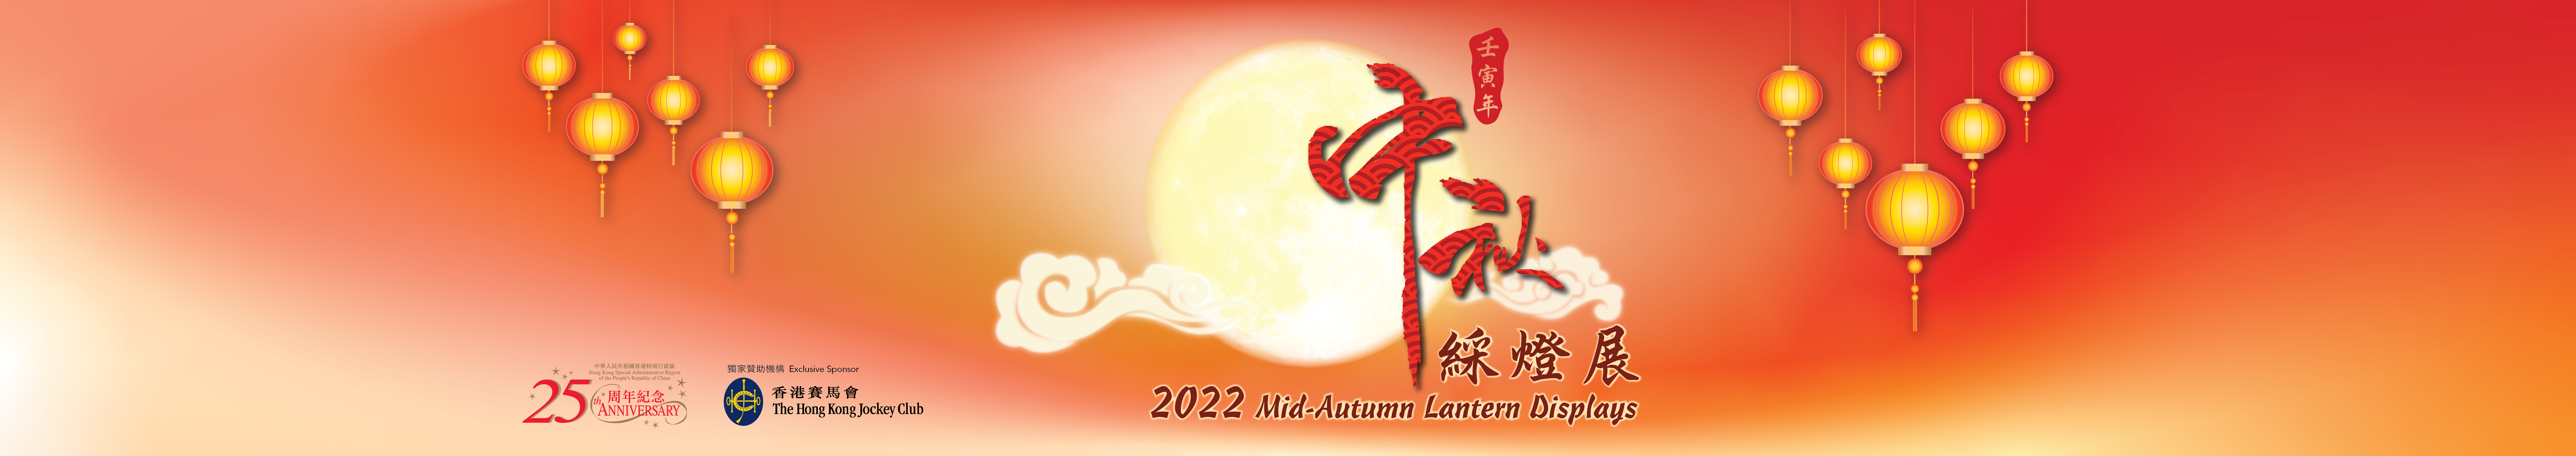 2022 Mid-Autumn Lantern Displays